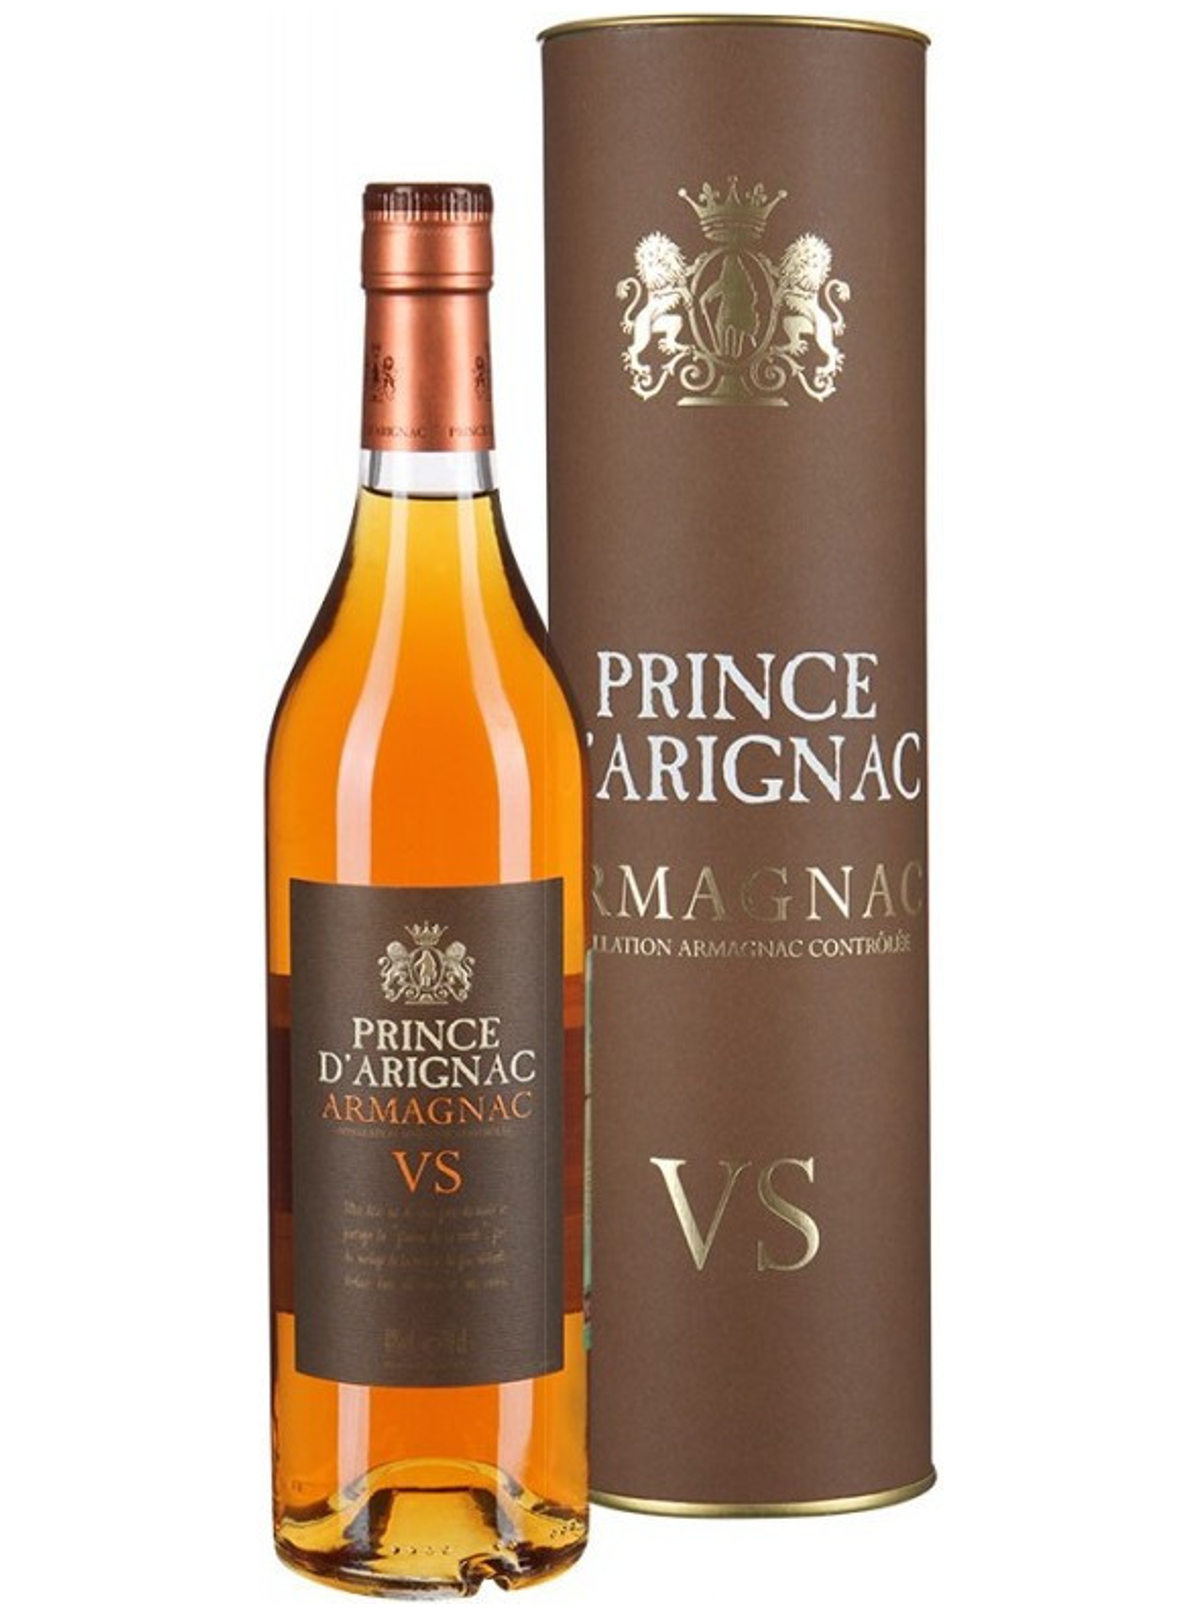 Арманьяк 0.7 цена. Prince Armagnac vs. Арманьяк принц д'Ариньяк Хо. Арманьяк Prince d'Arignac vs. Prince Armagnac vs 0.7.